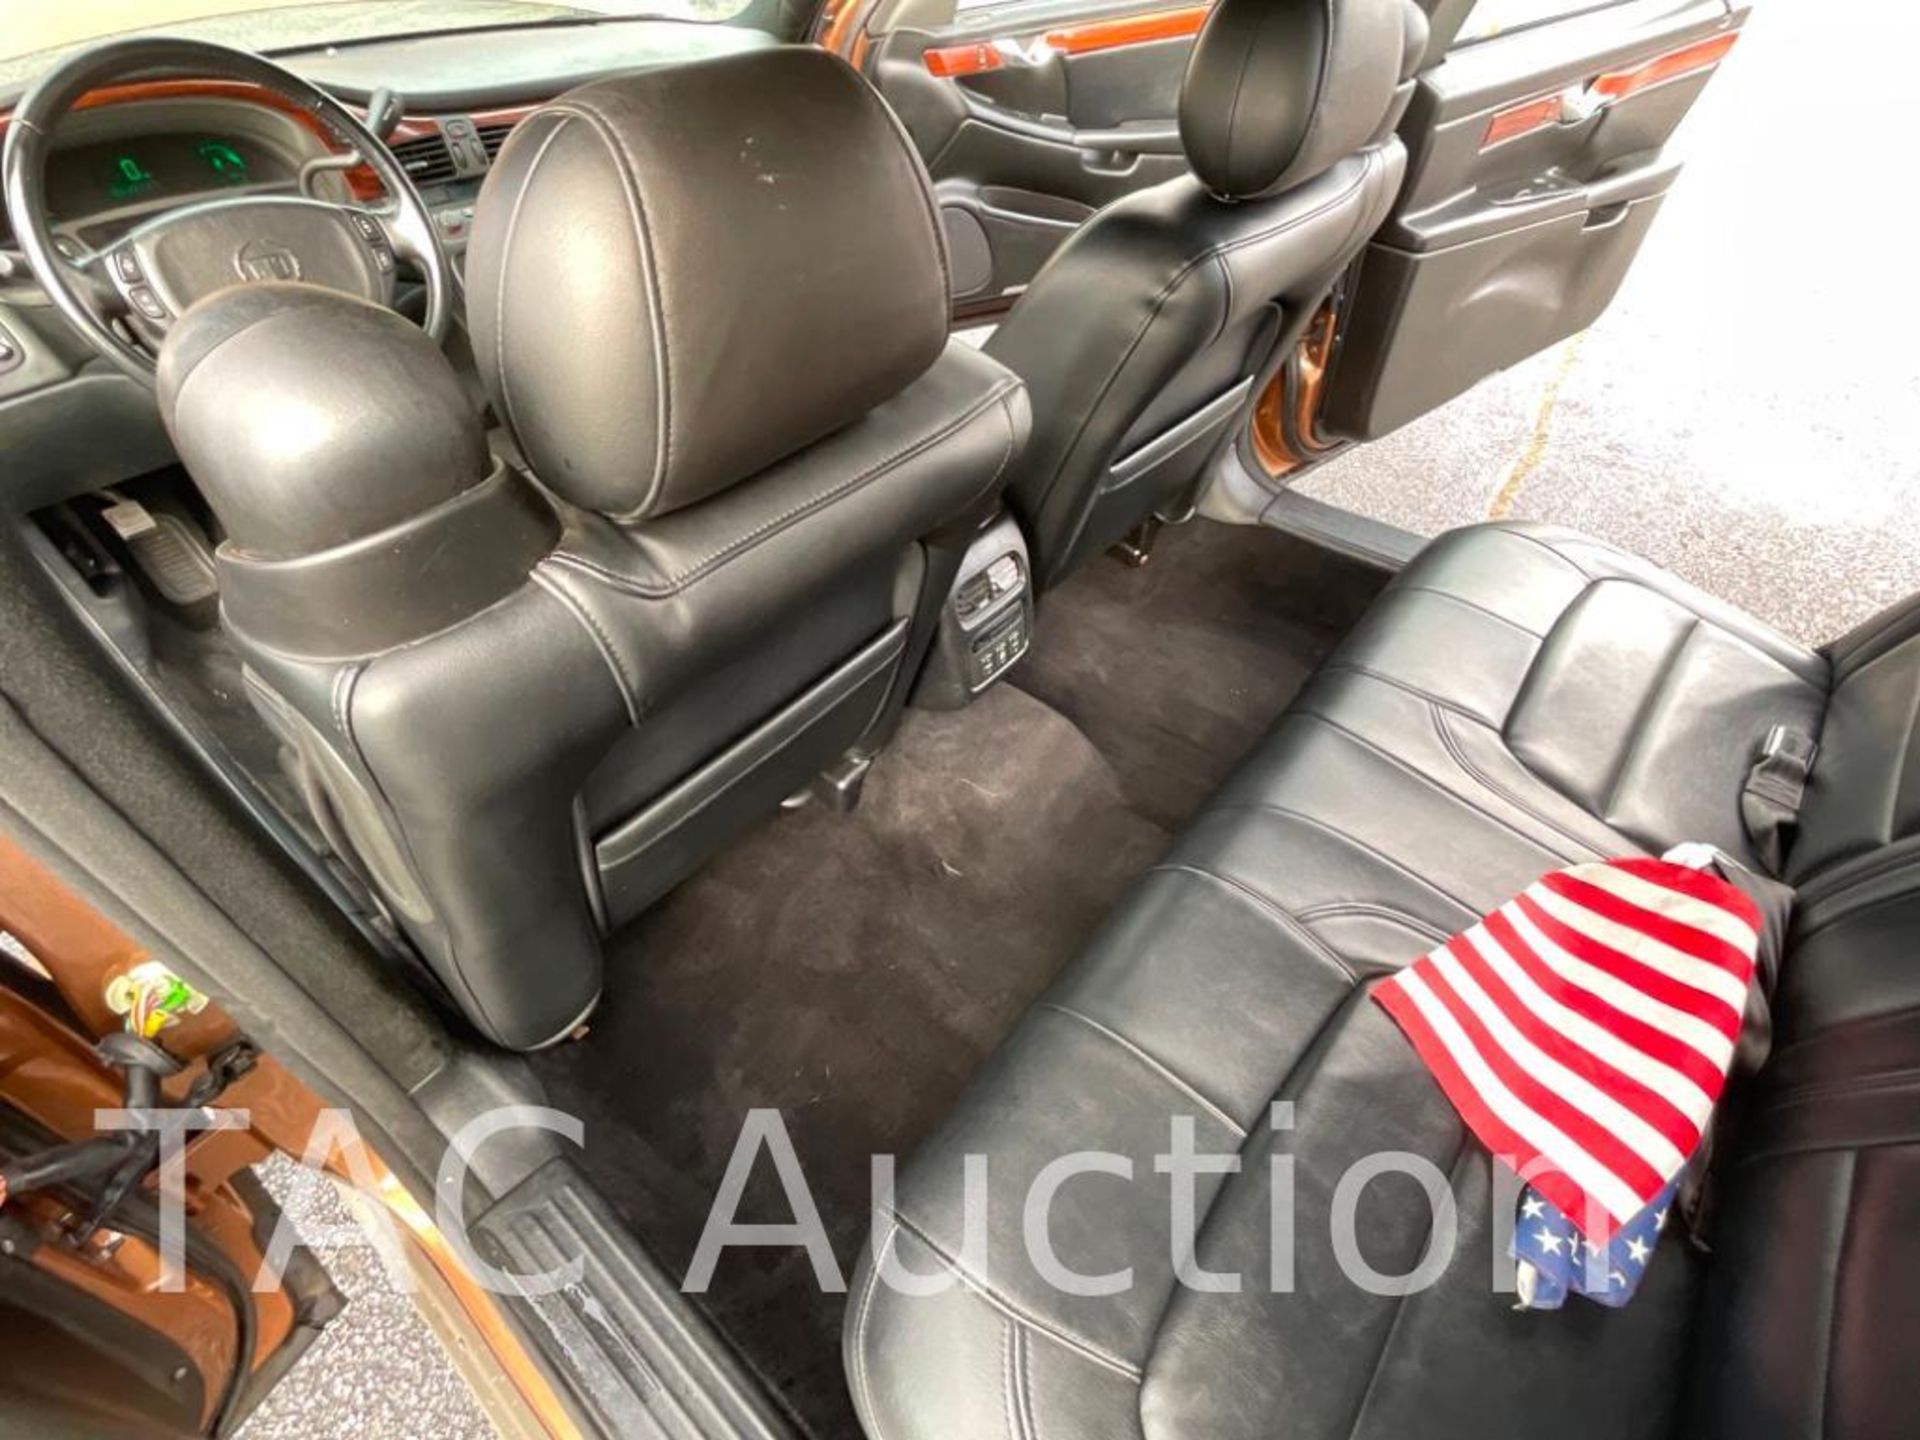 2005 Cadillac DeVille (9) Passenger Limousine - Image 37 of 54